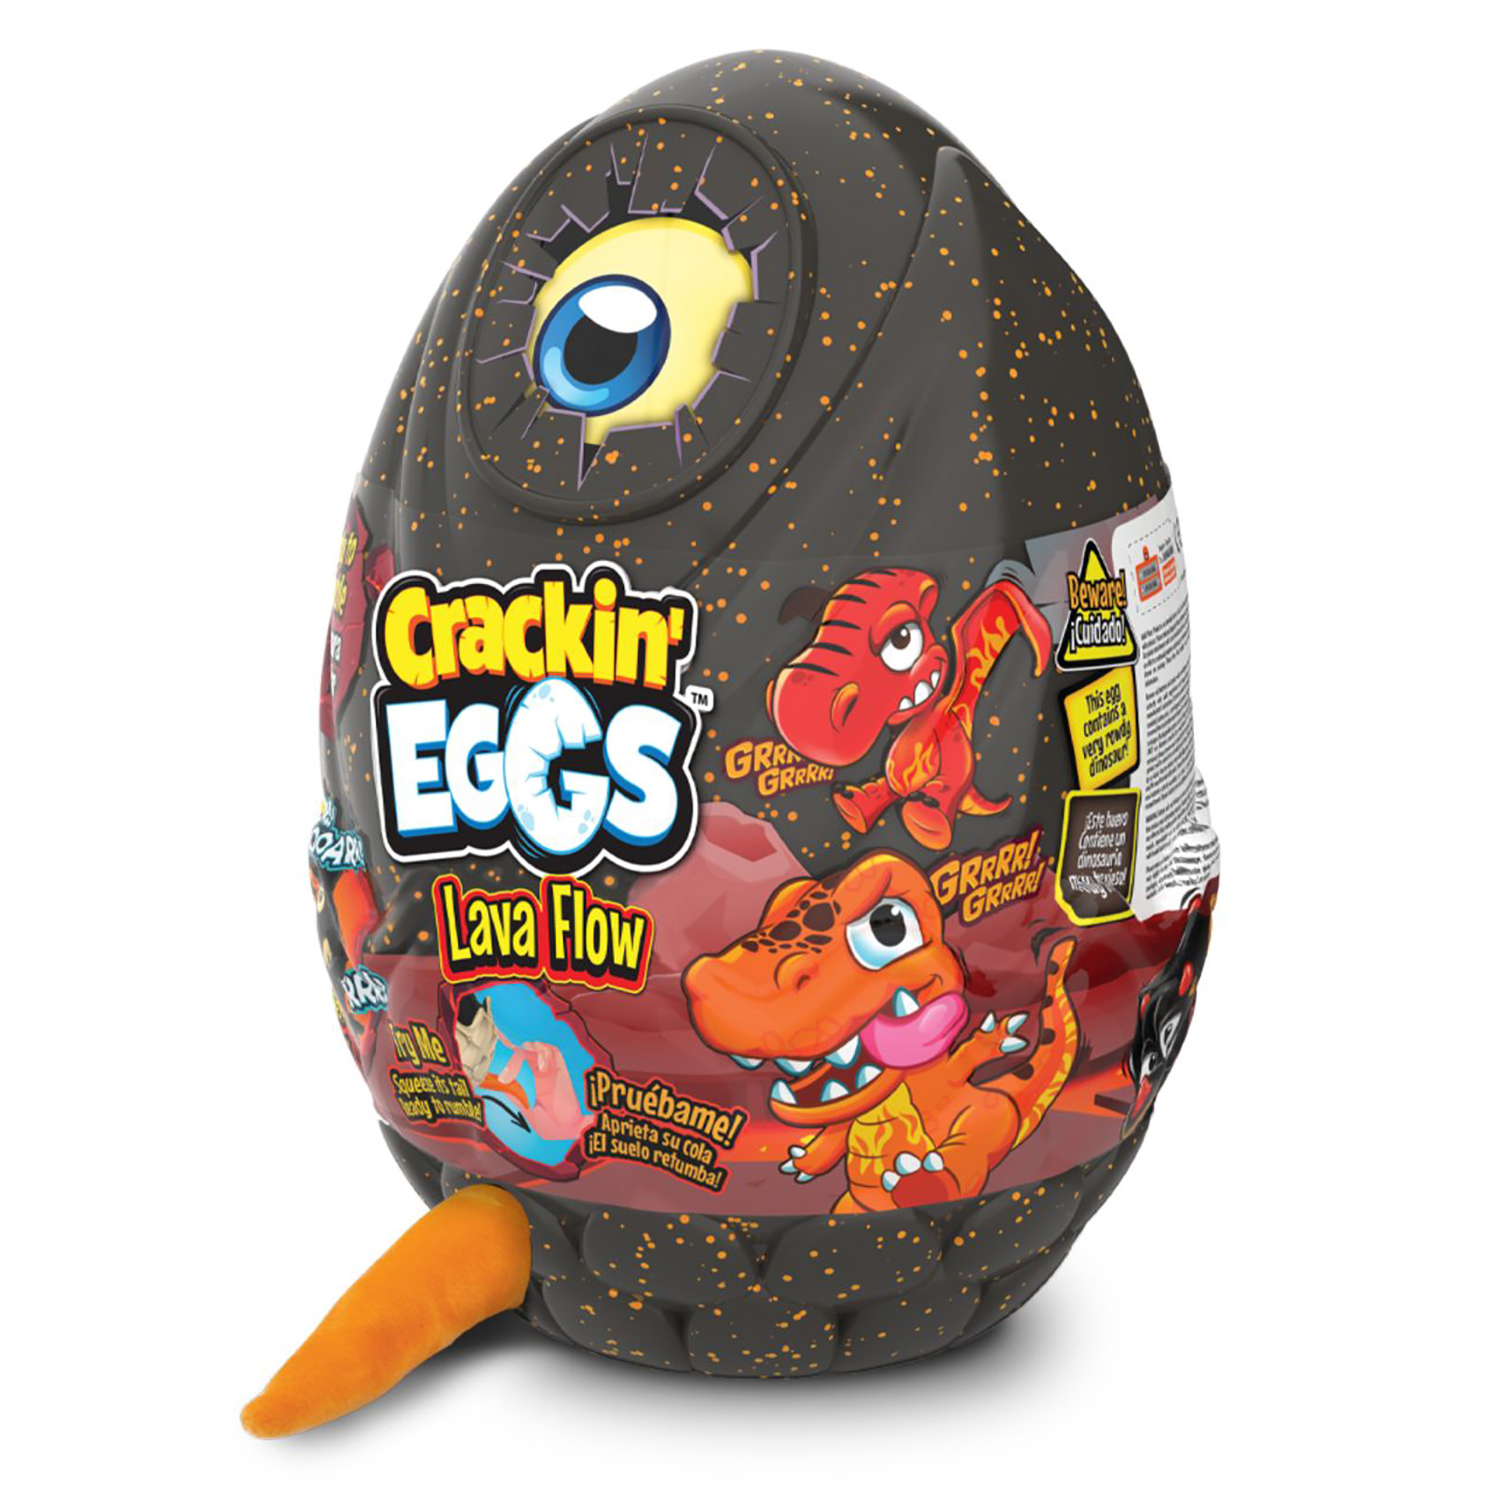 Мягкая игрушка Crackin' Eggs Динозавр оранжевый в яйце, серия Лава, 22 см растущая в воде игрушка bondibon вырасти рыбку в яйце вв5371 4